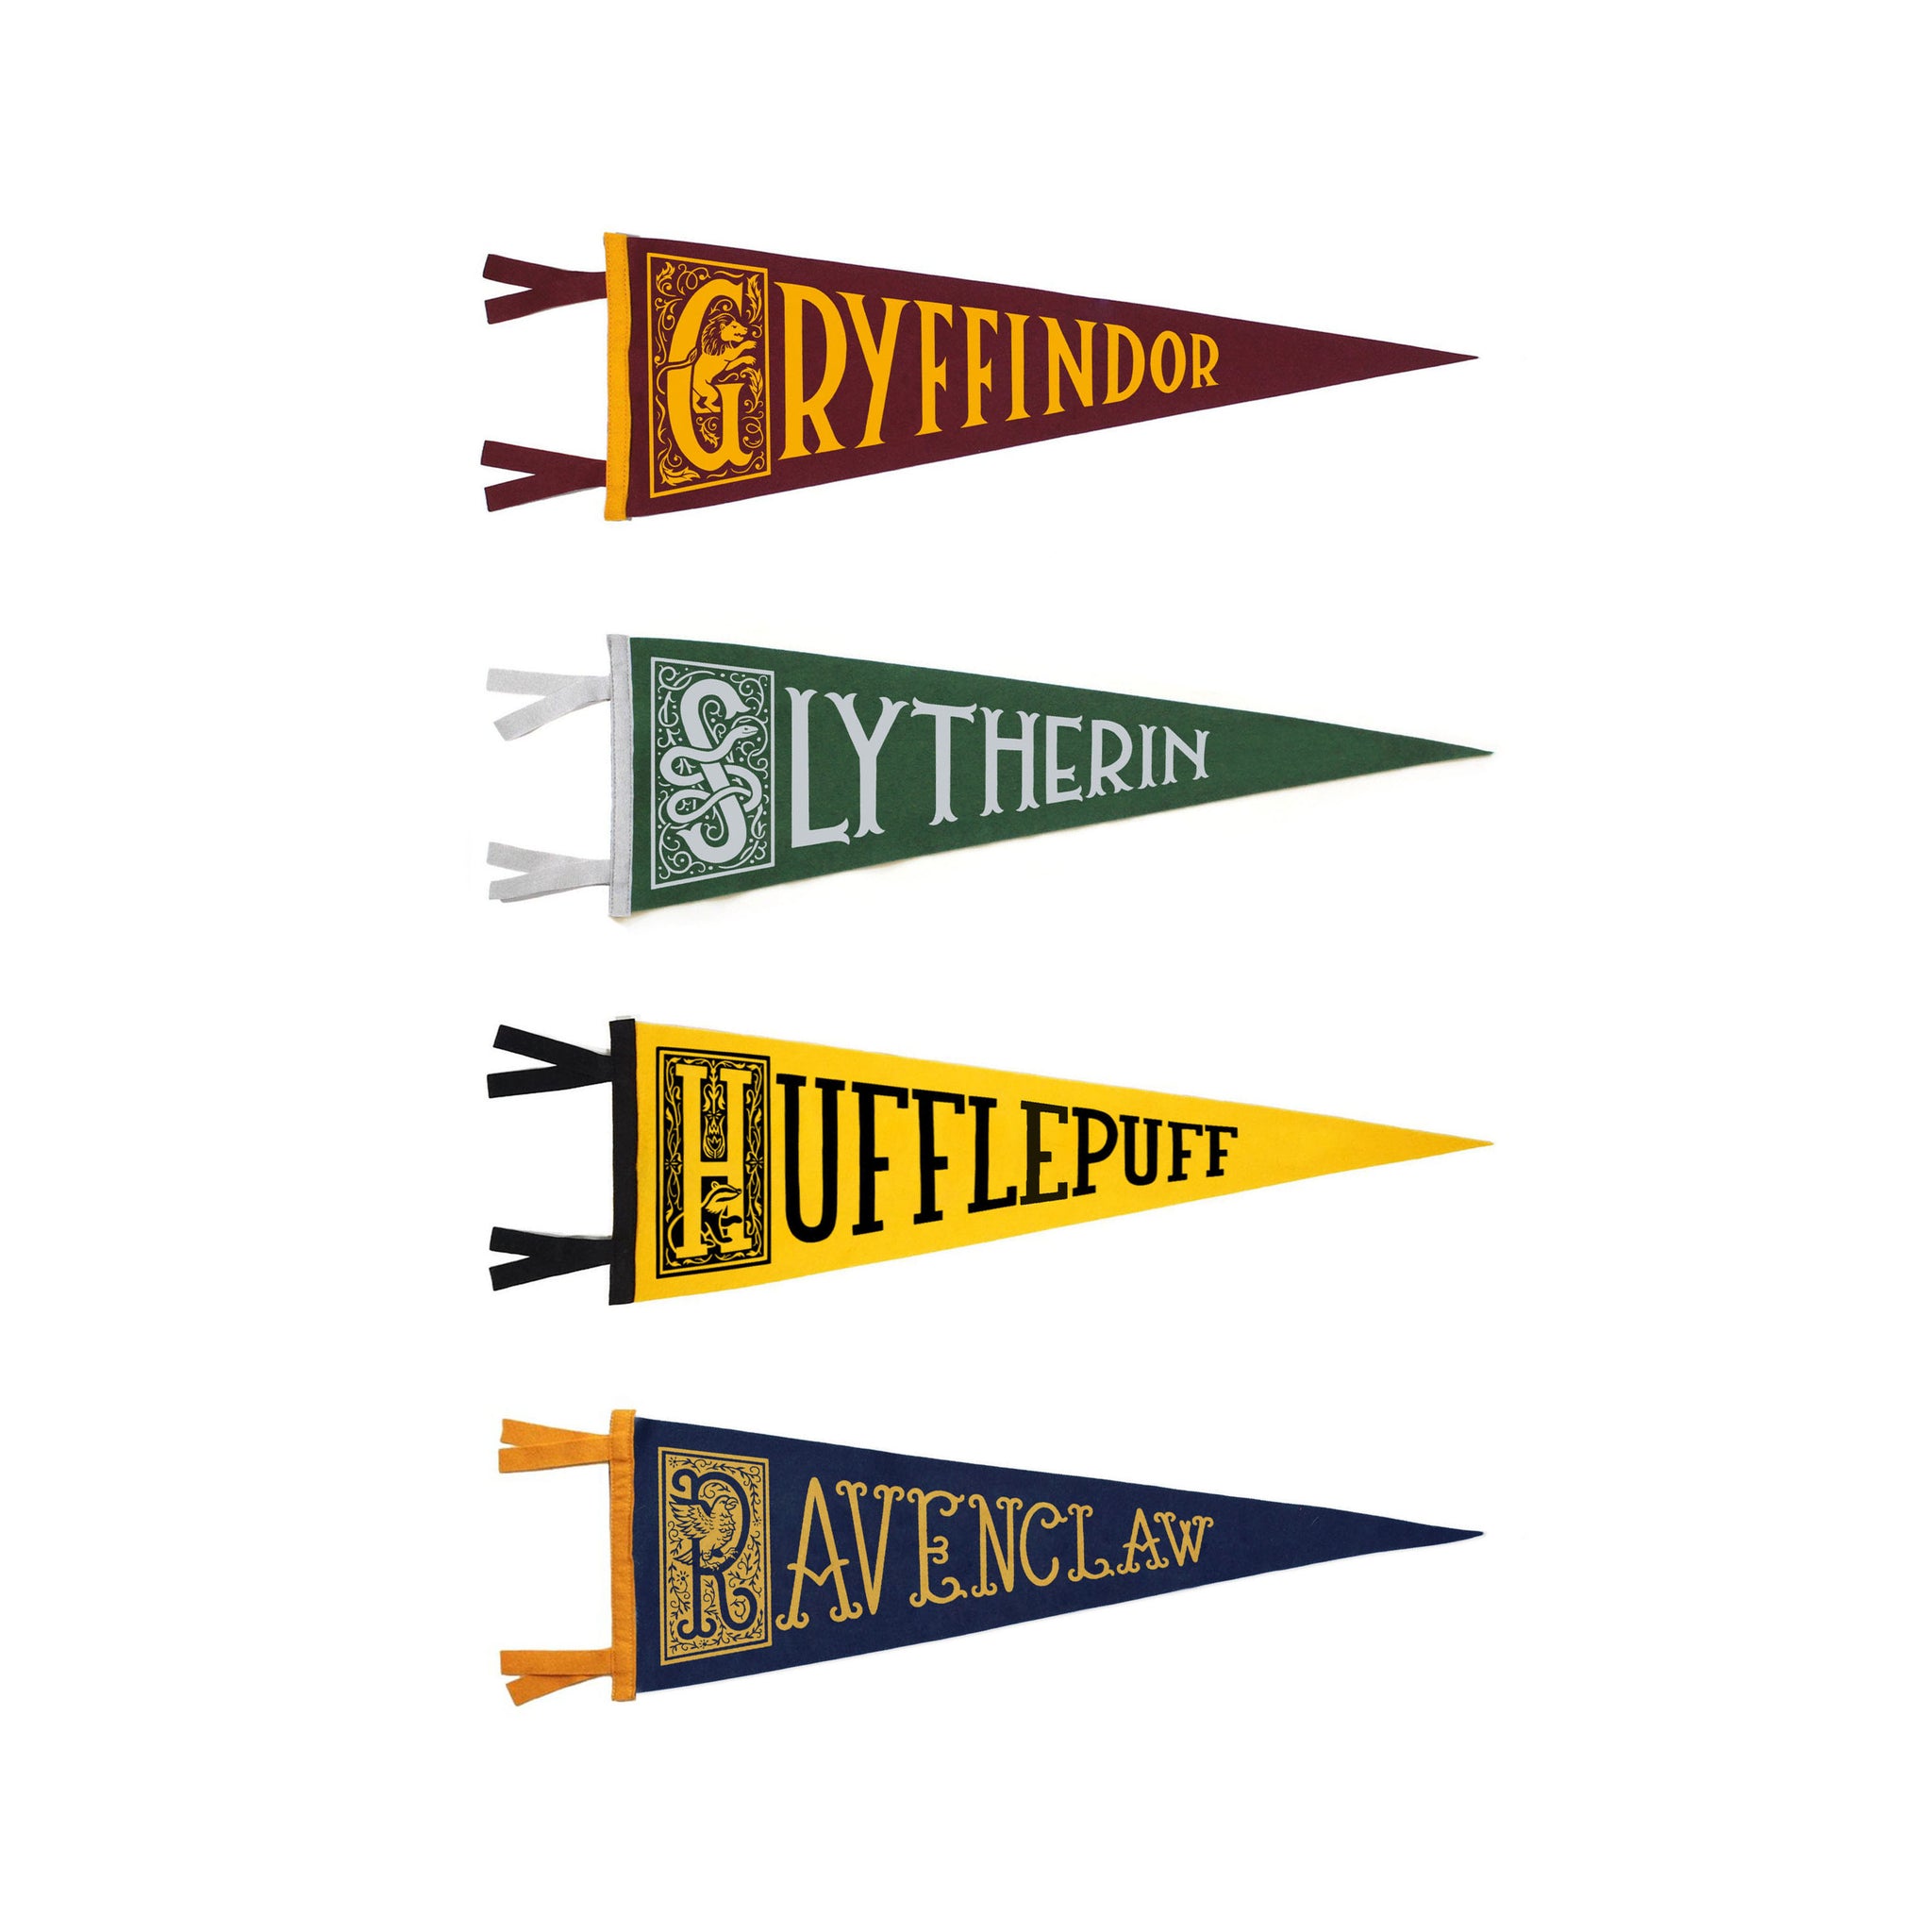 Harry Potter Gryffindor Flag